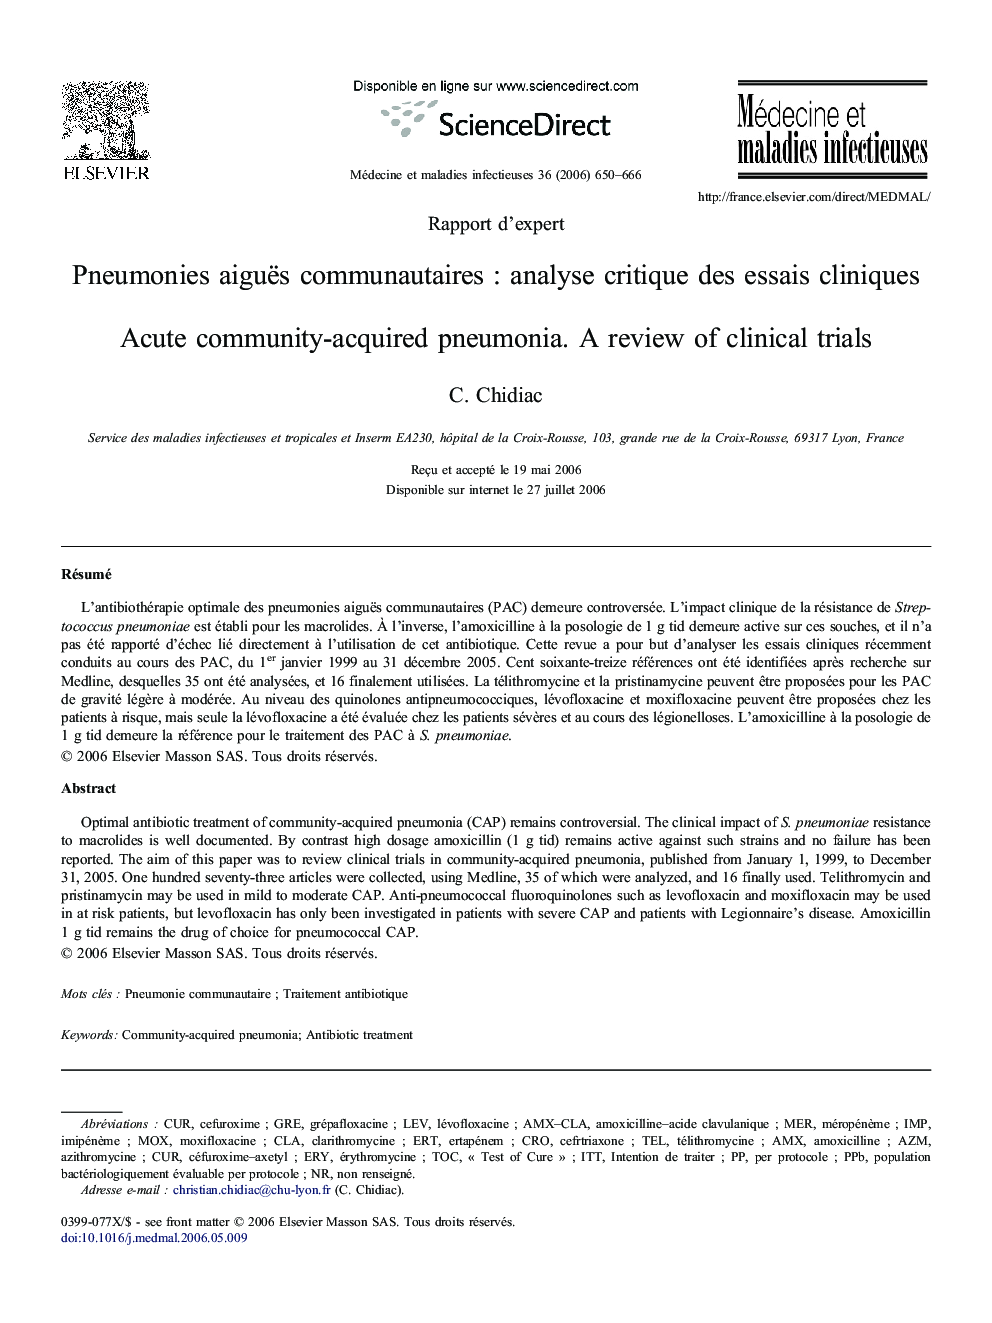 Pneumonies aiguës communautaires : analyse critique des essais cliniques